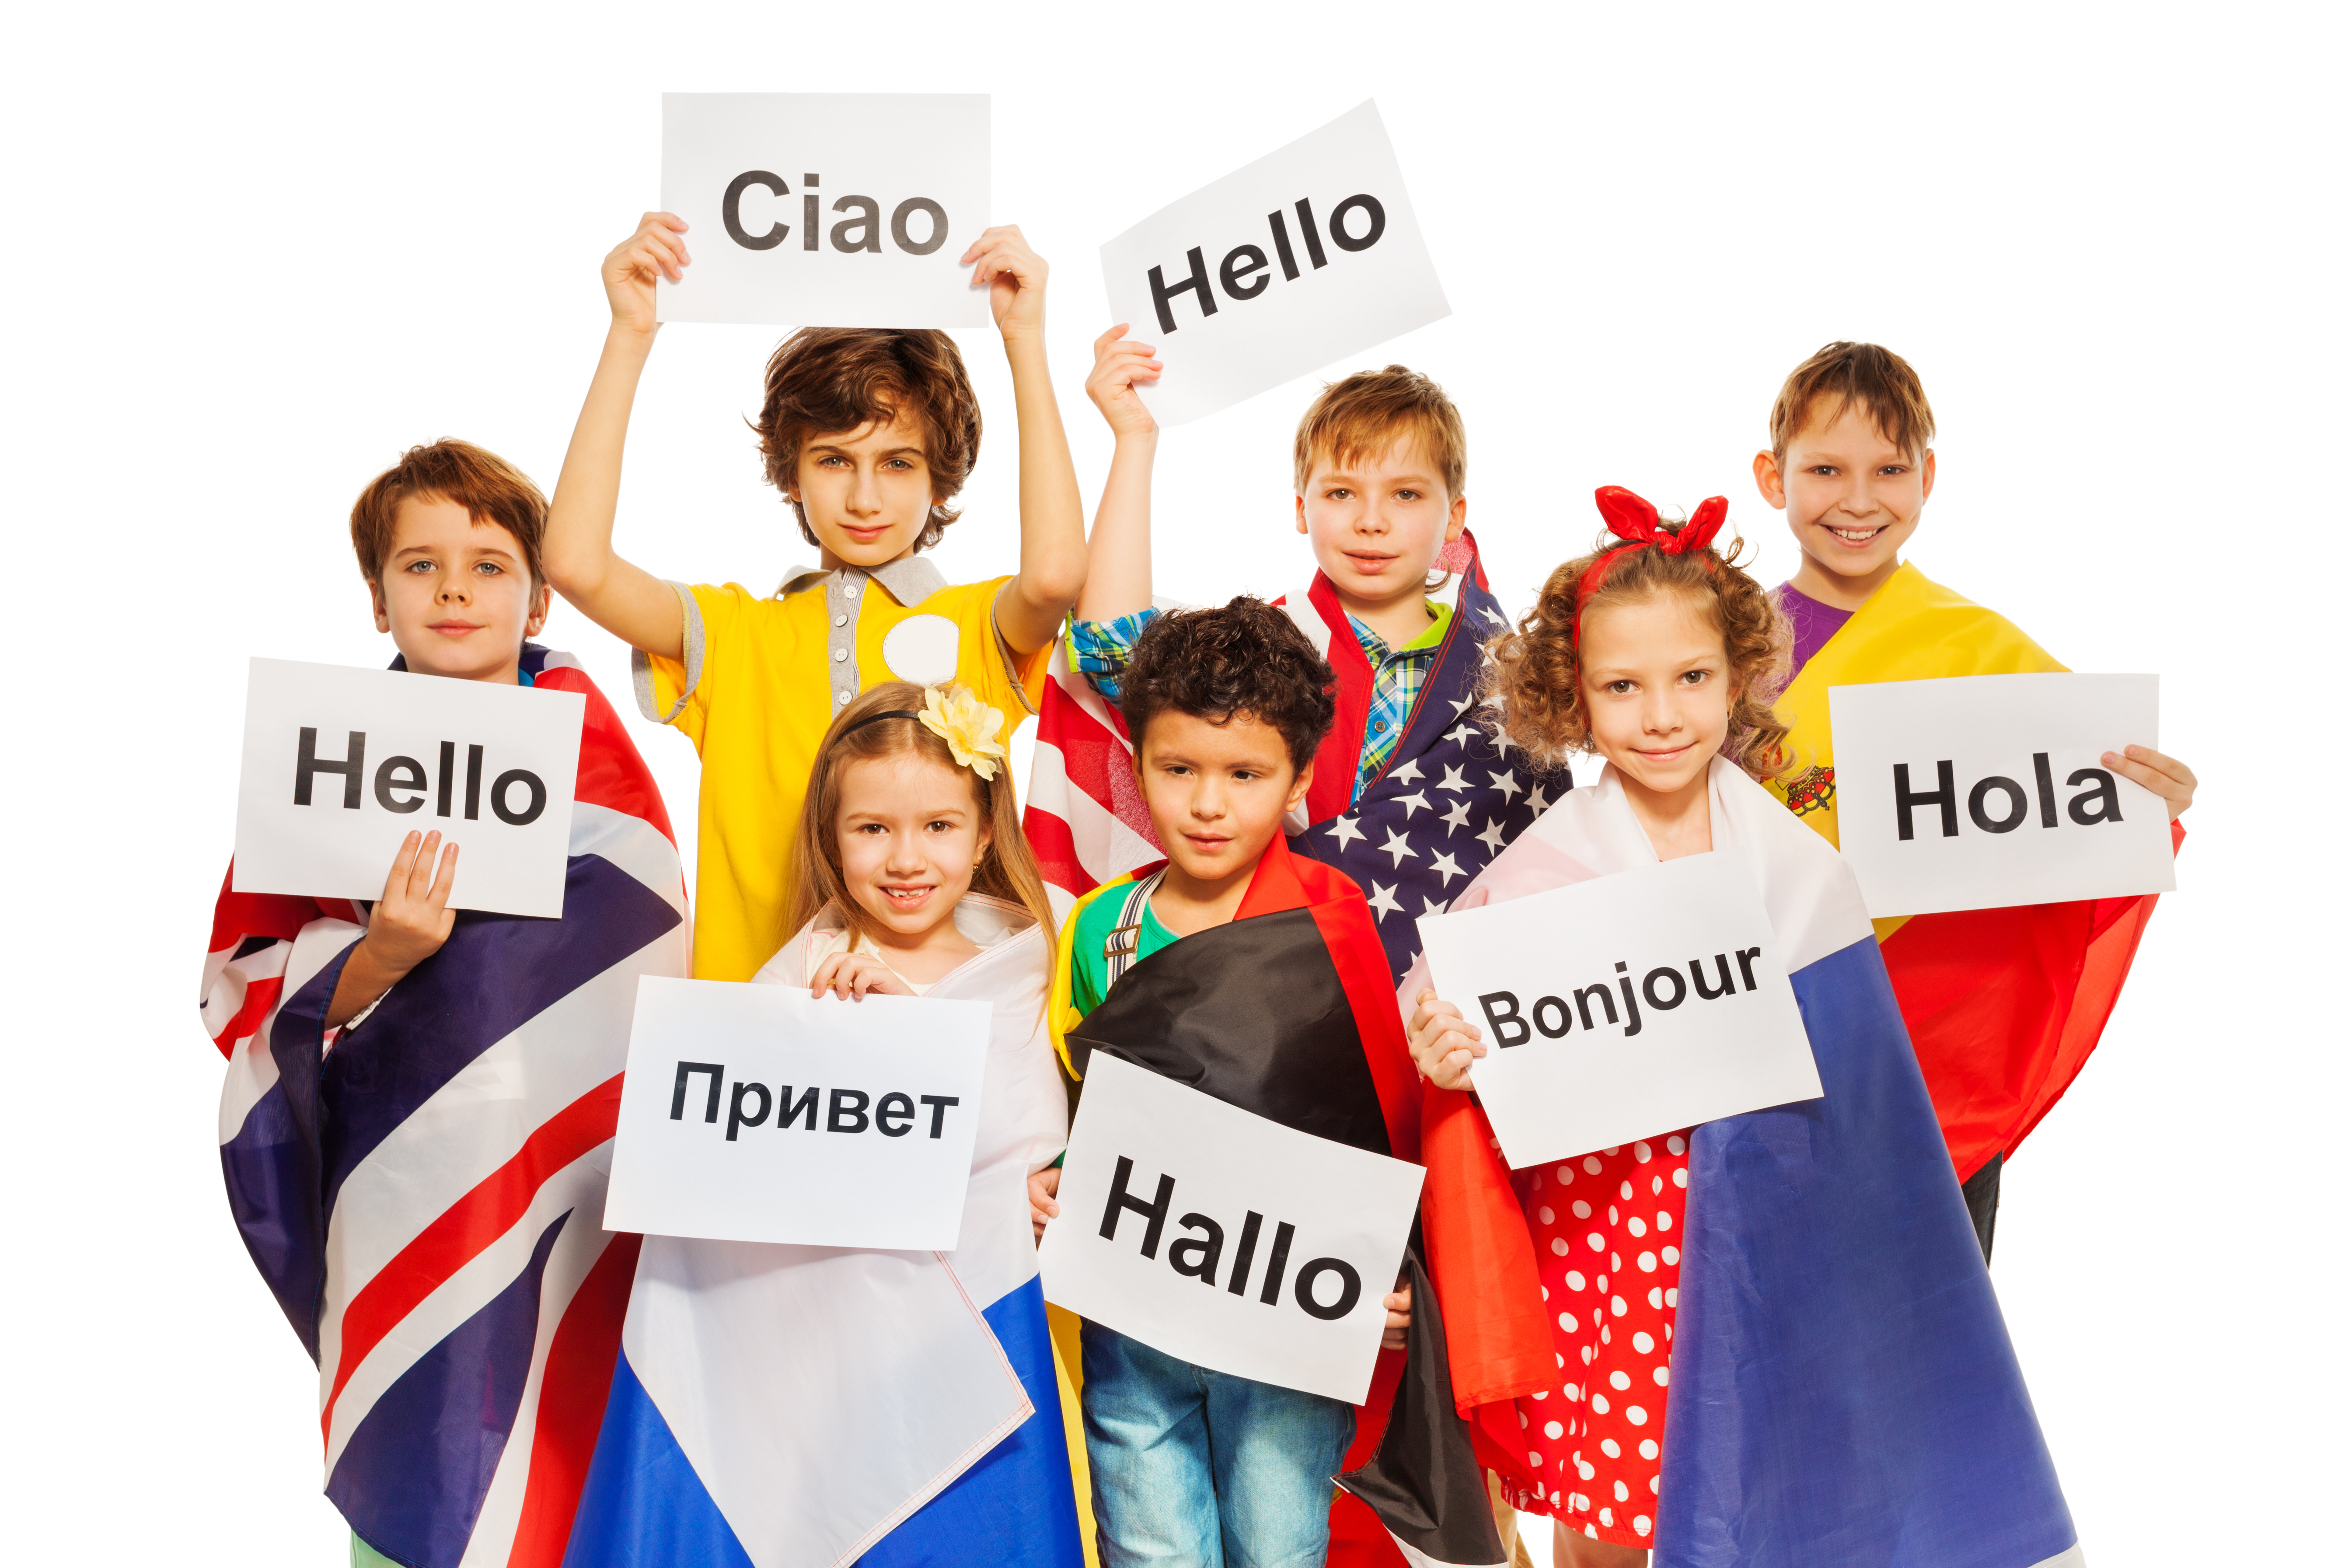 Изучение второго иностранного. Изучение иностранных языков. Иностранные языки. Изучение иностранного языка. Иностранные языки для детей.